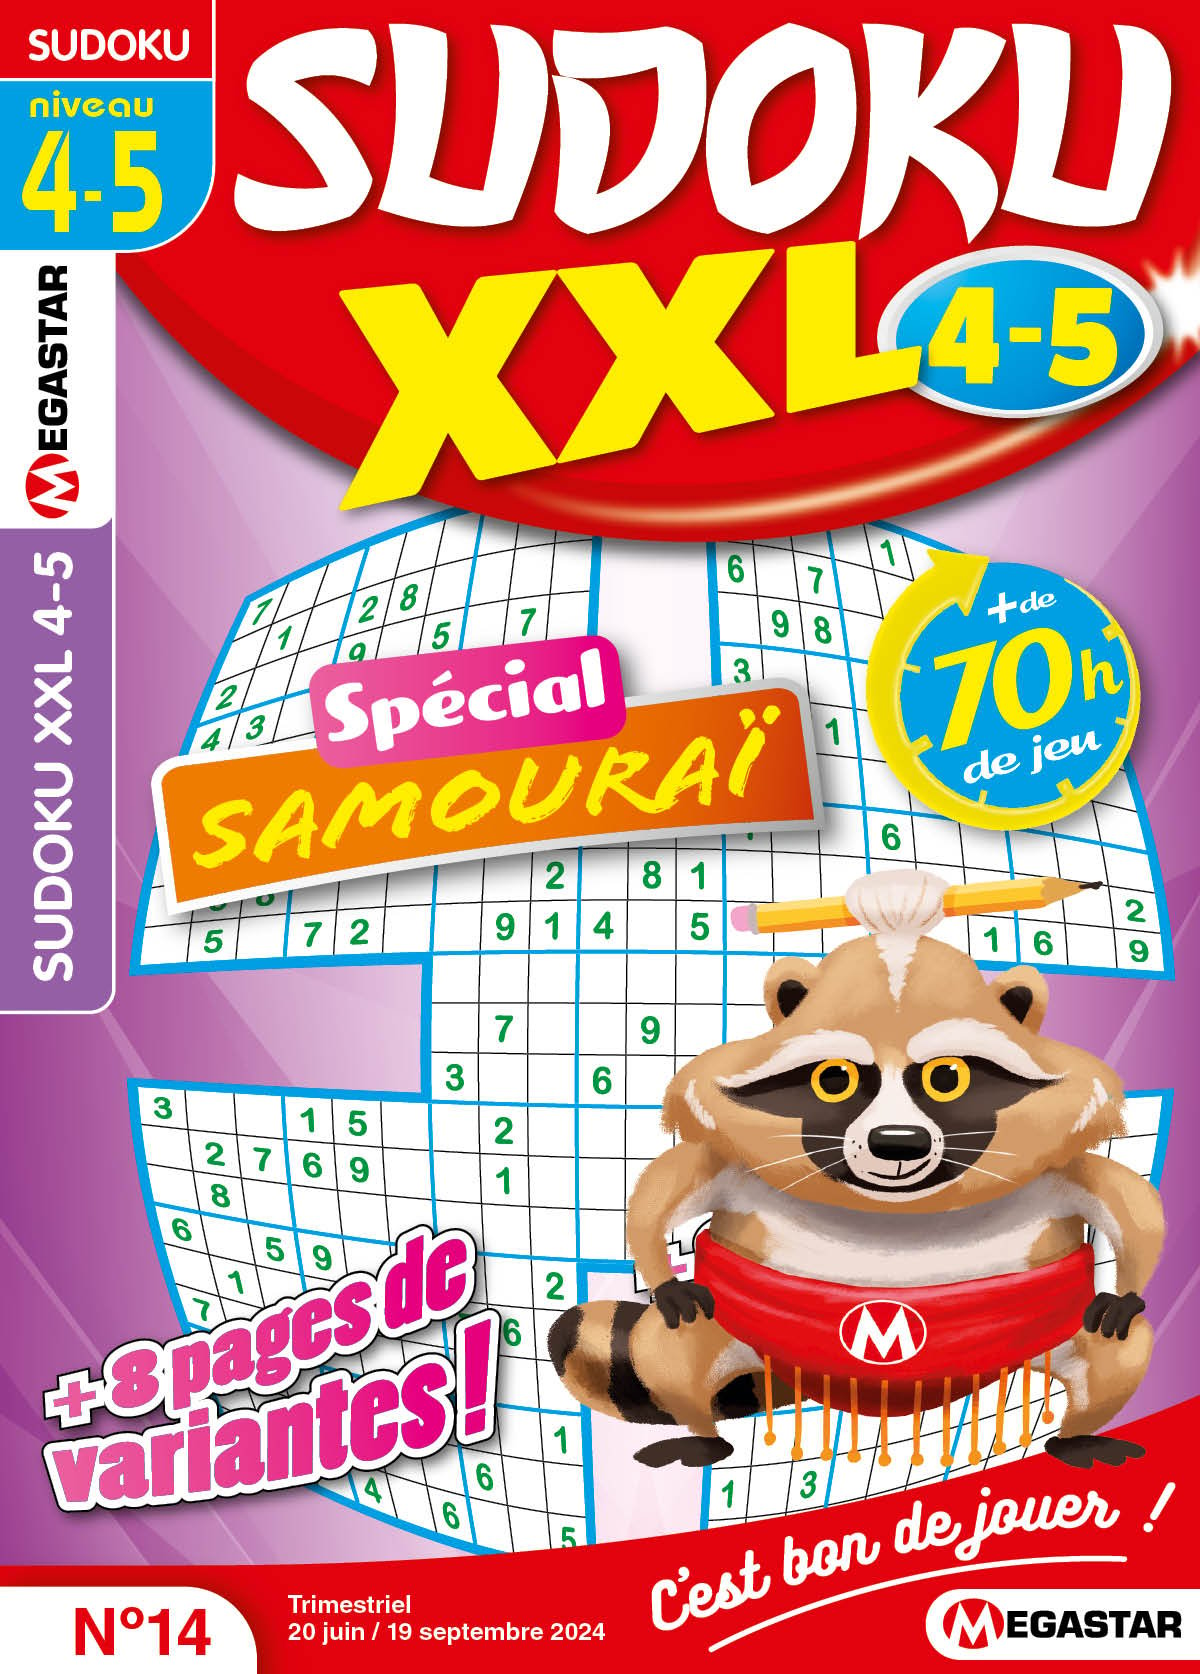 Sudoku XXL 4-5 Numéro 14